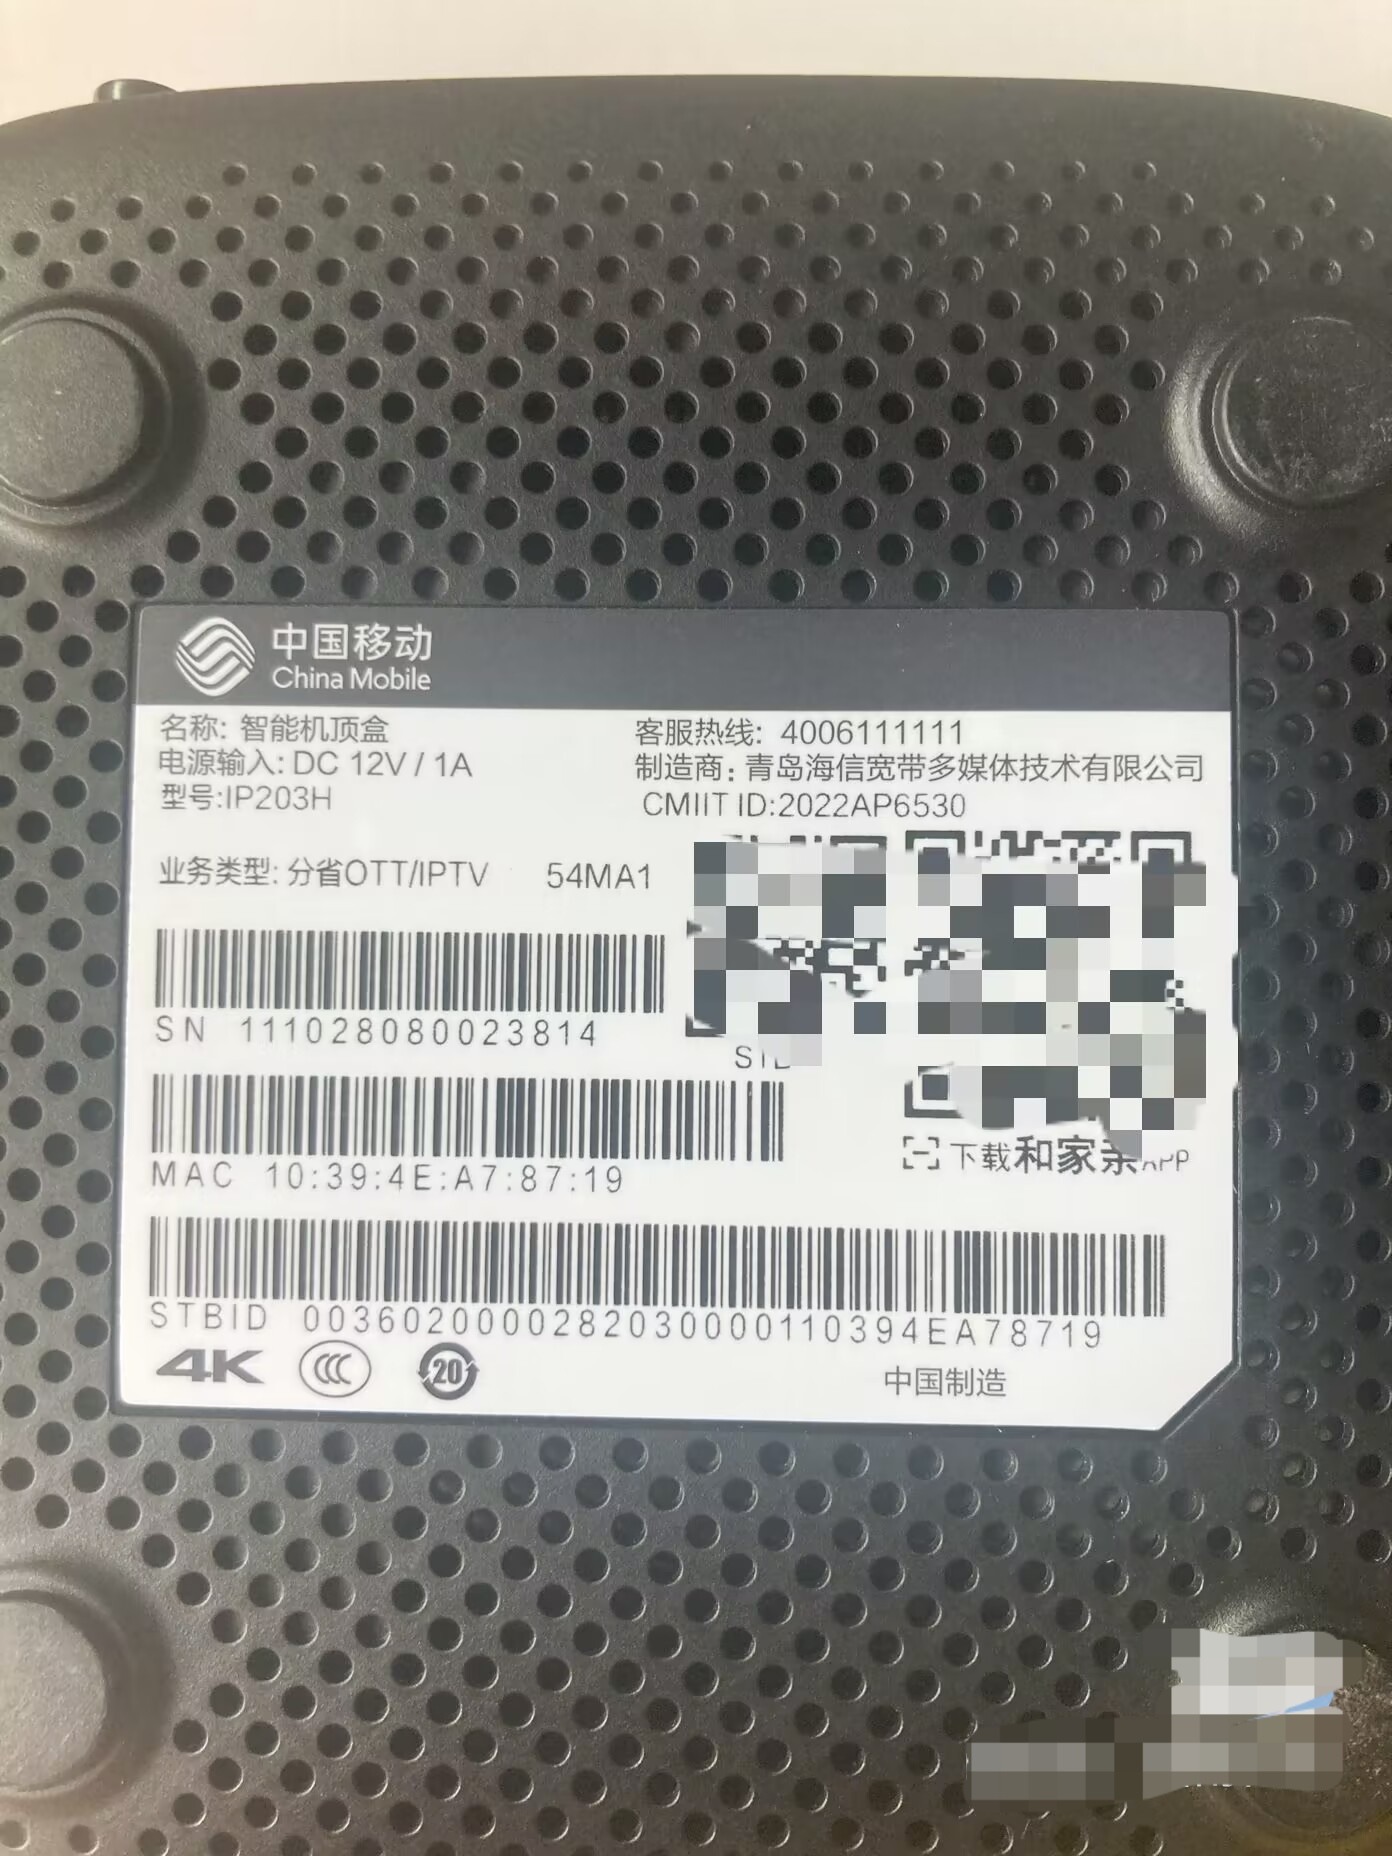 海信IP203H／IP202H(通刷)_晨星MSO9385芯片_安卓9.0_免拆卡刷固件_中国 